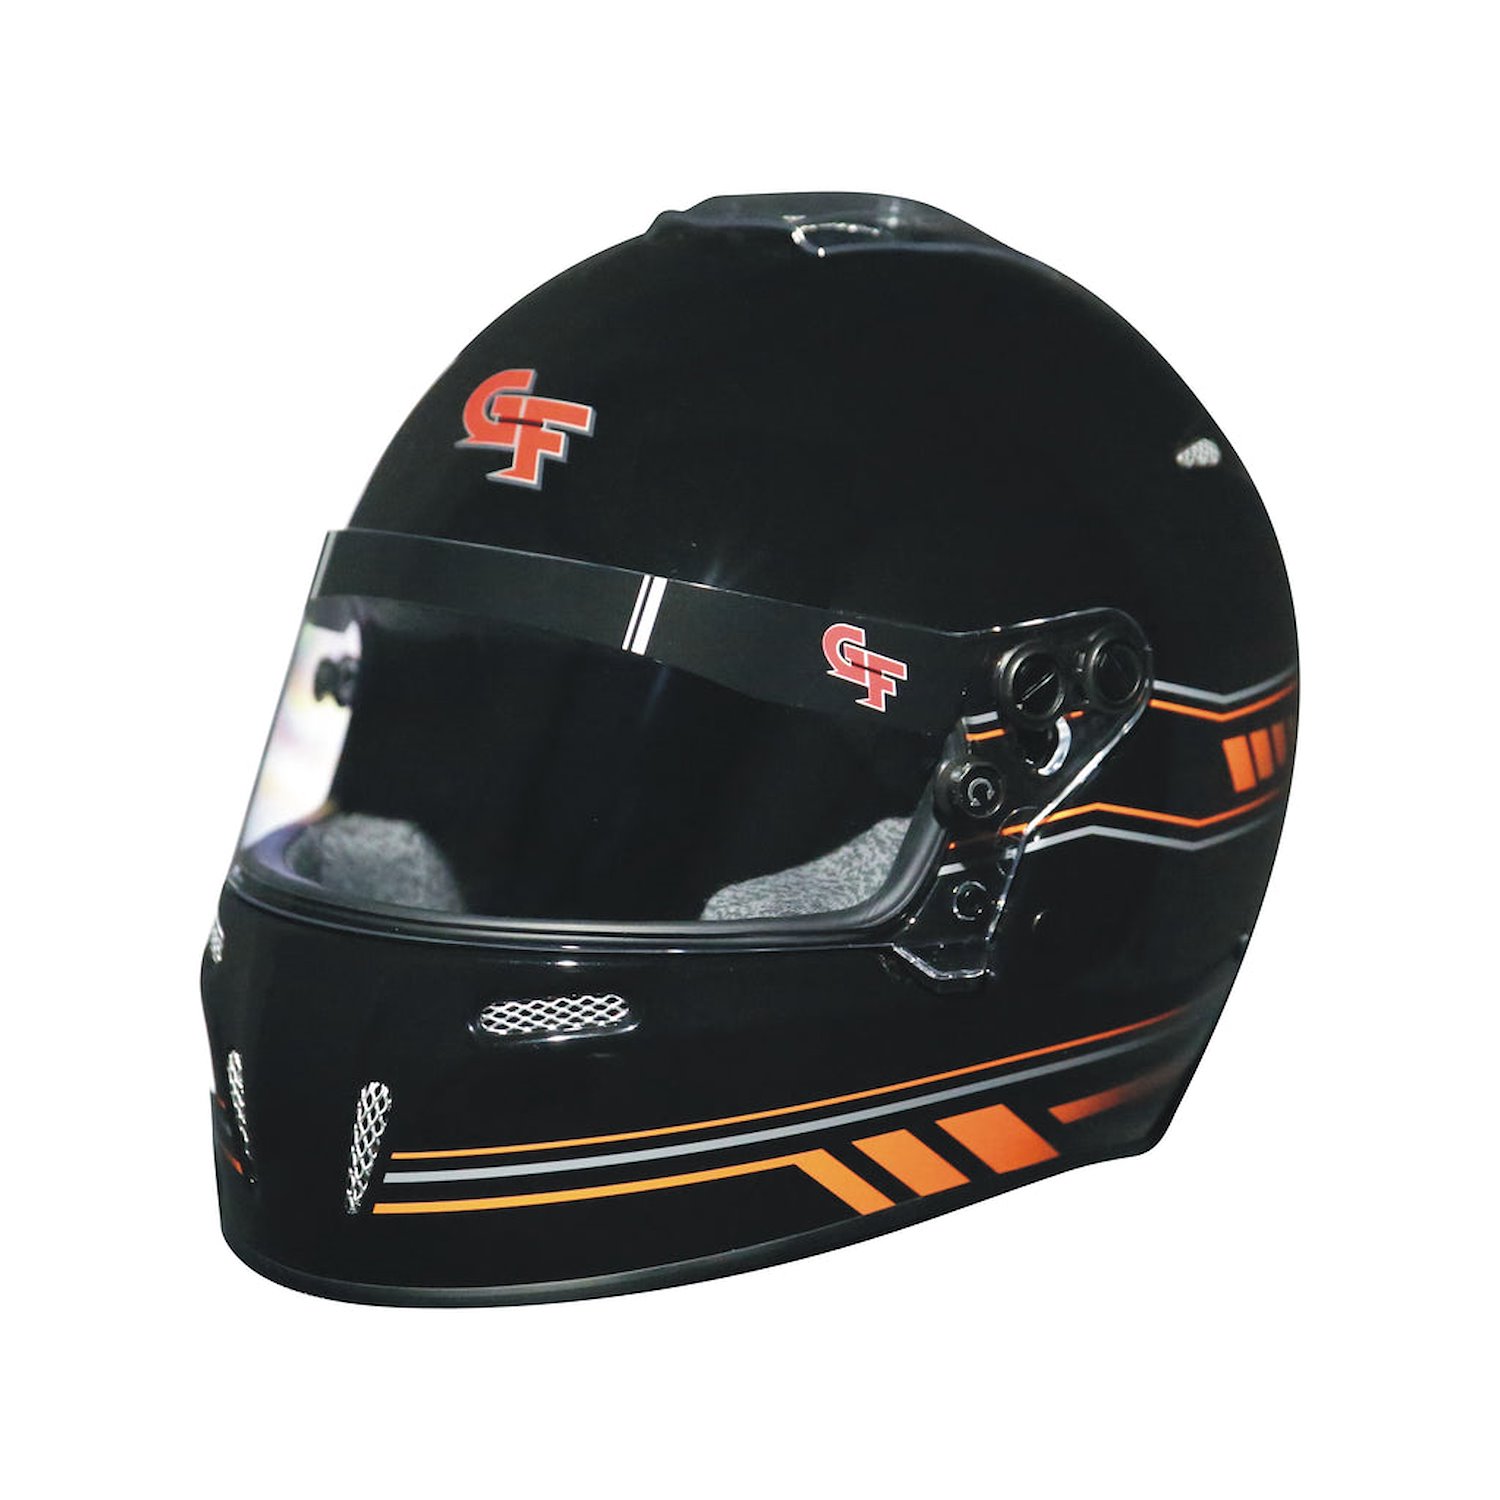 14102LRGB2 Helmet, Nighthawk Graphics SA2020, Large, Black/Orange